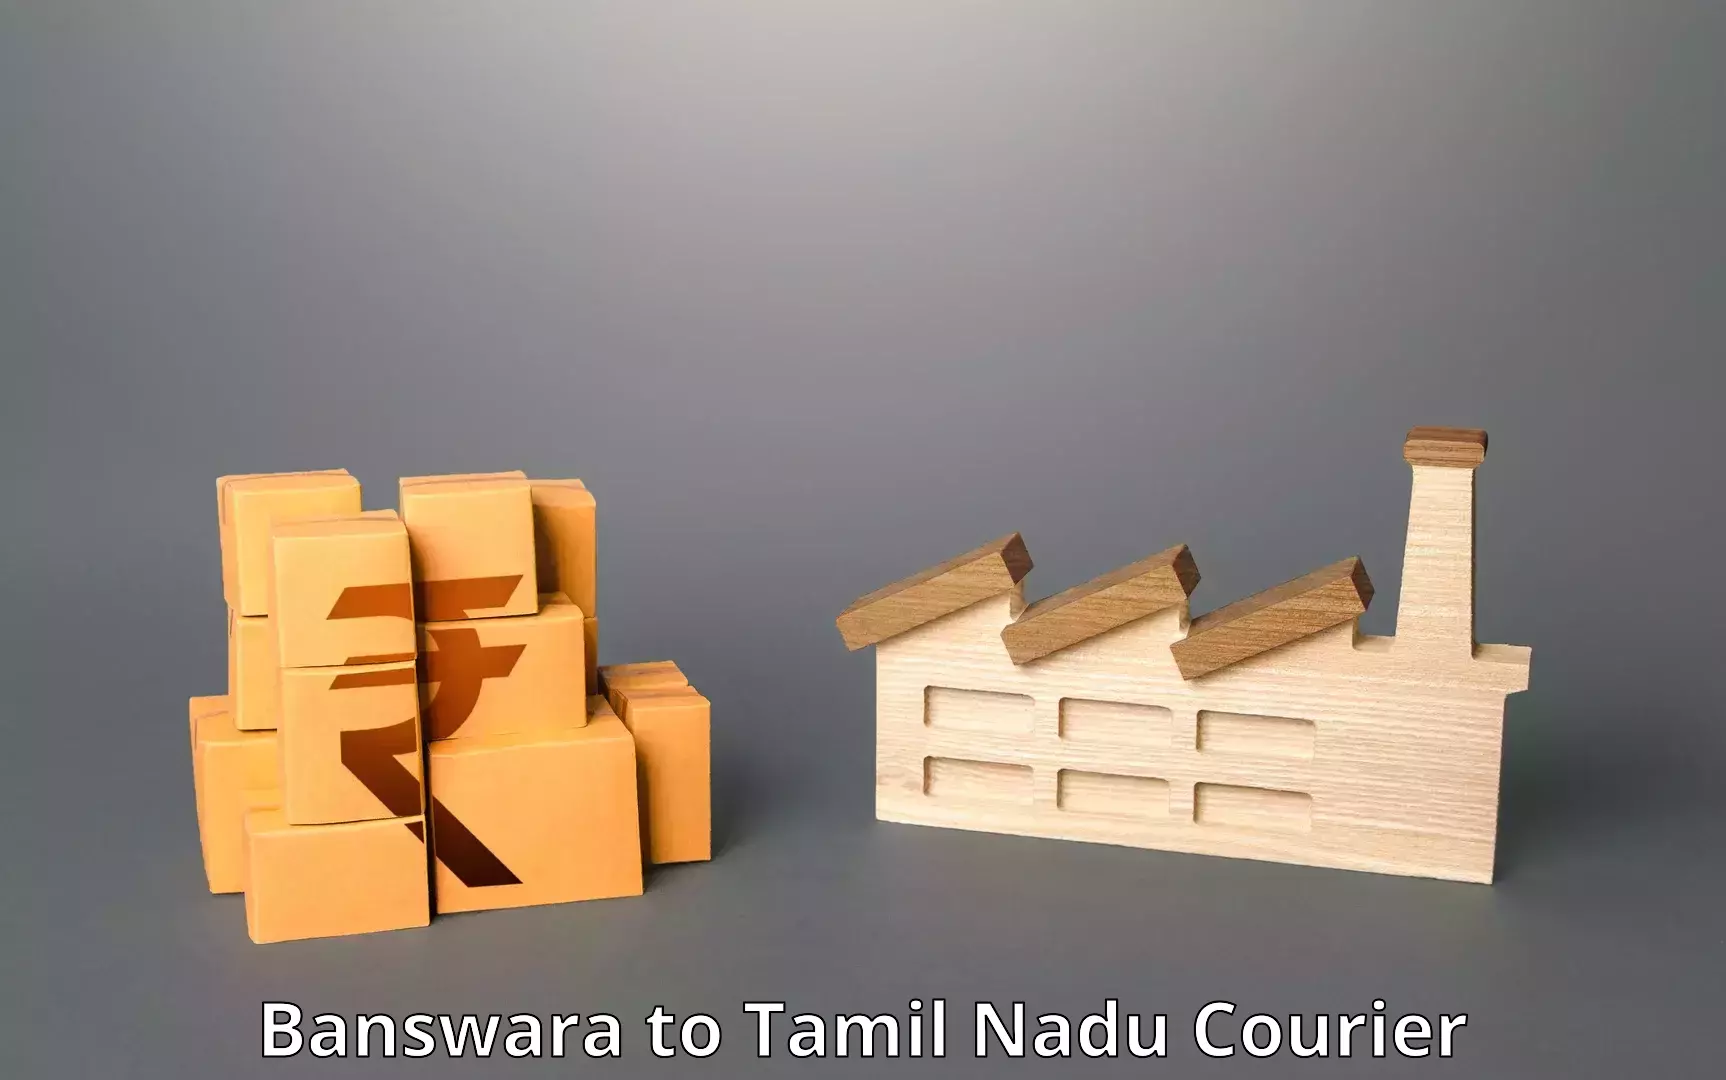 Courier app Banswara to Aranthangi